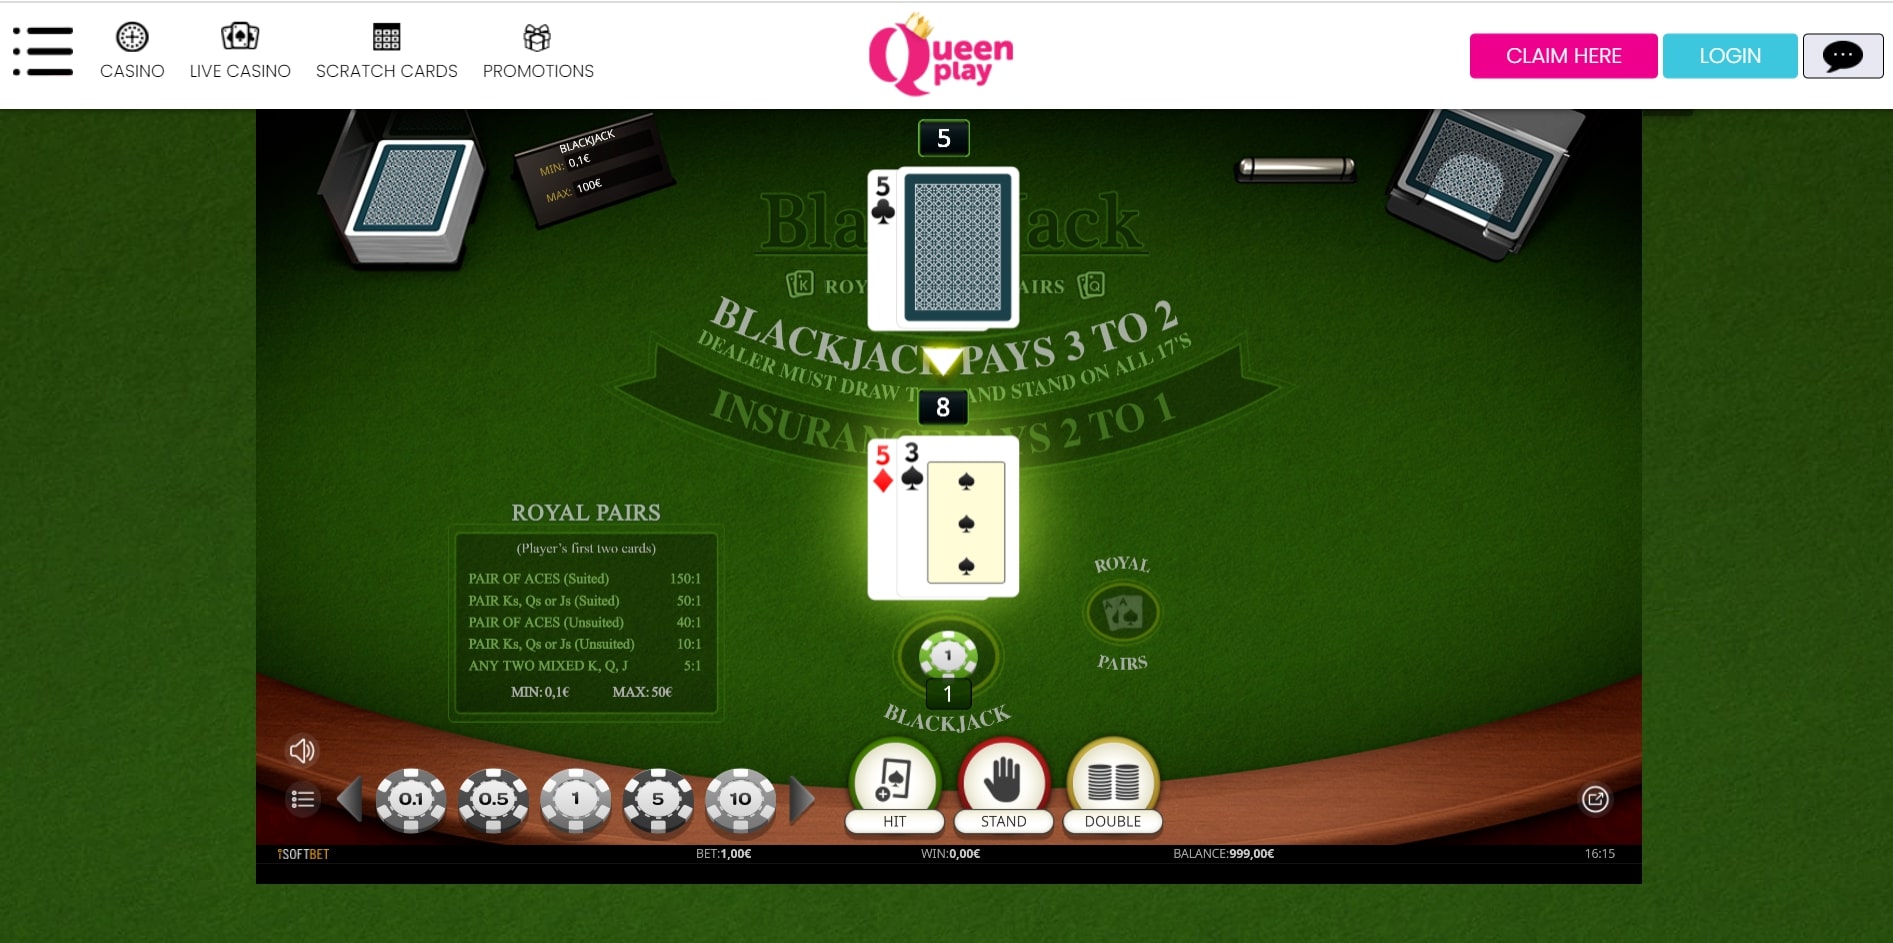 Queen Play Slots